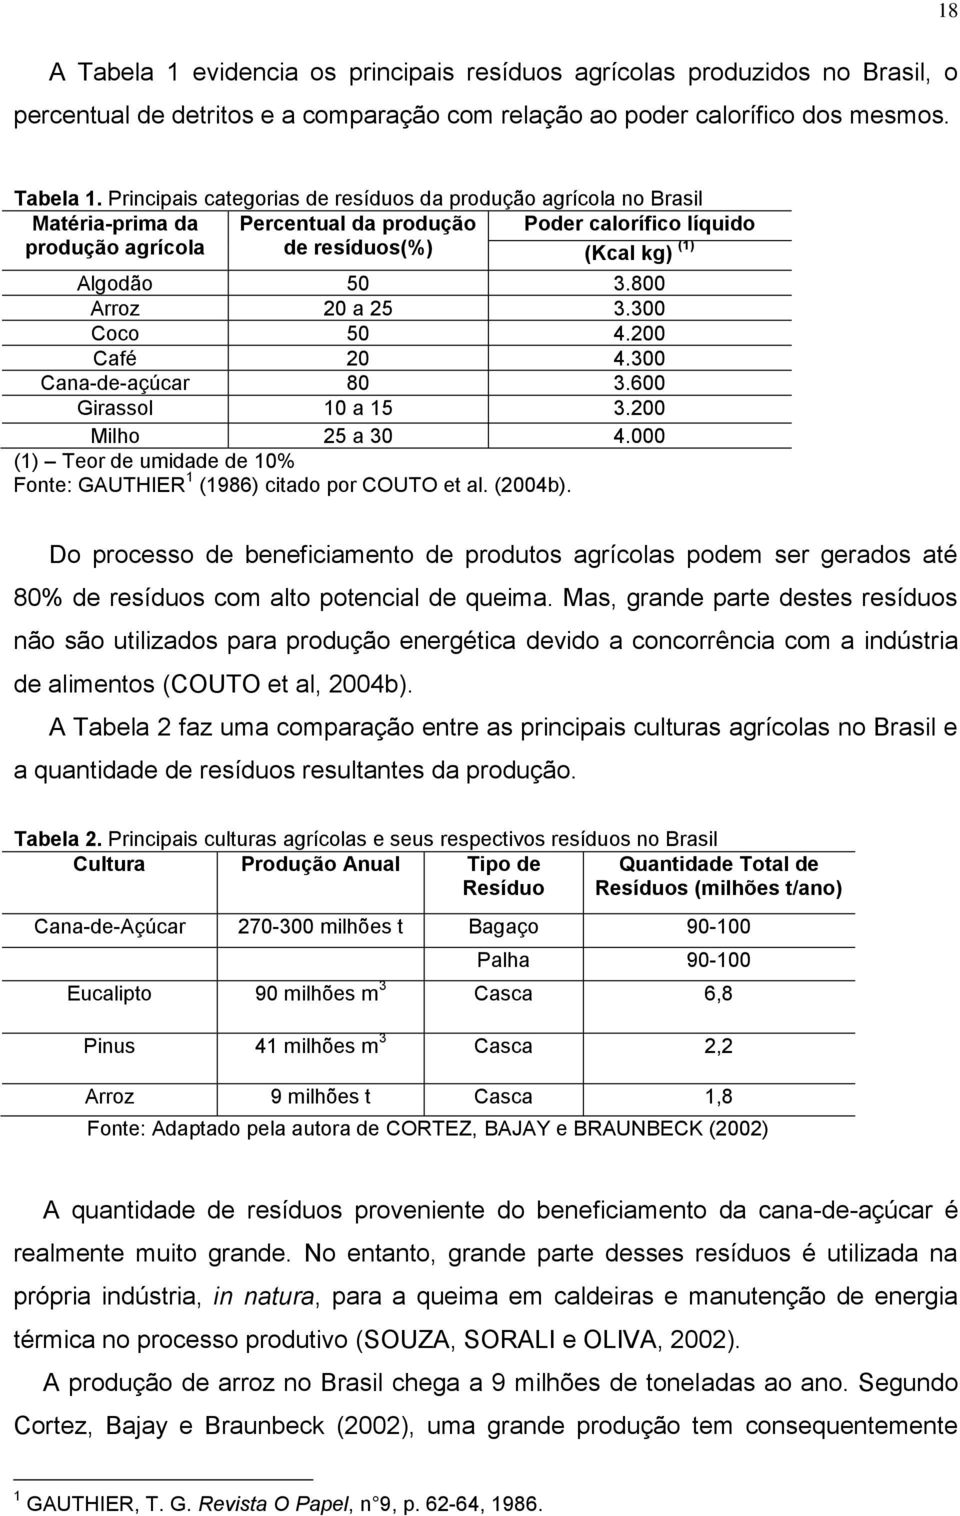 Principais categorias de resíduos da produção agrícola no Brasil Matéria-prima da produção agrícola Percentual da produção de resíduos(%) Poder calorífico líquido (Kcal kg) (1) Algodão 50 3.